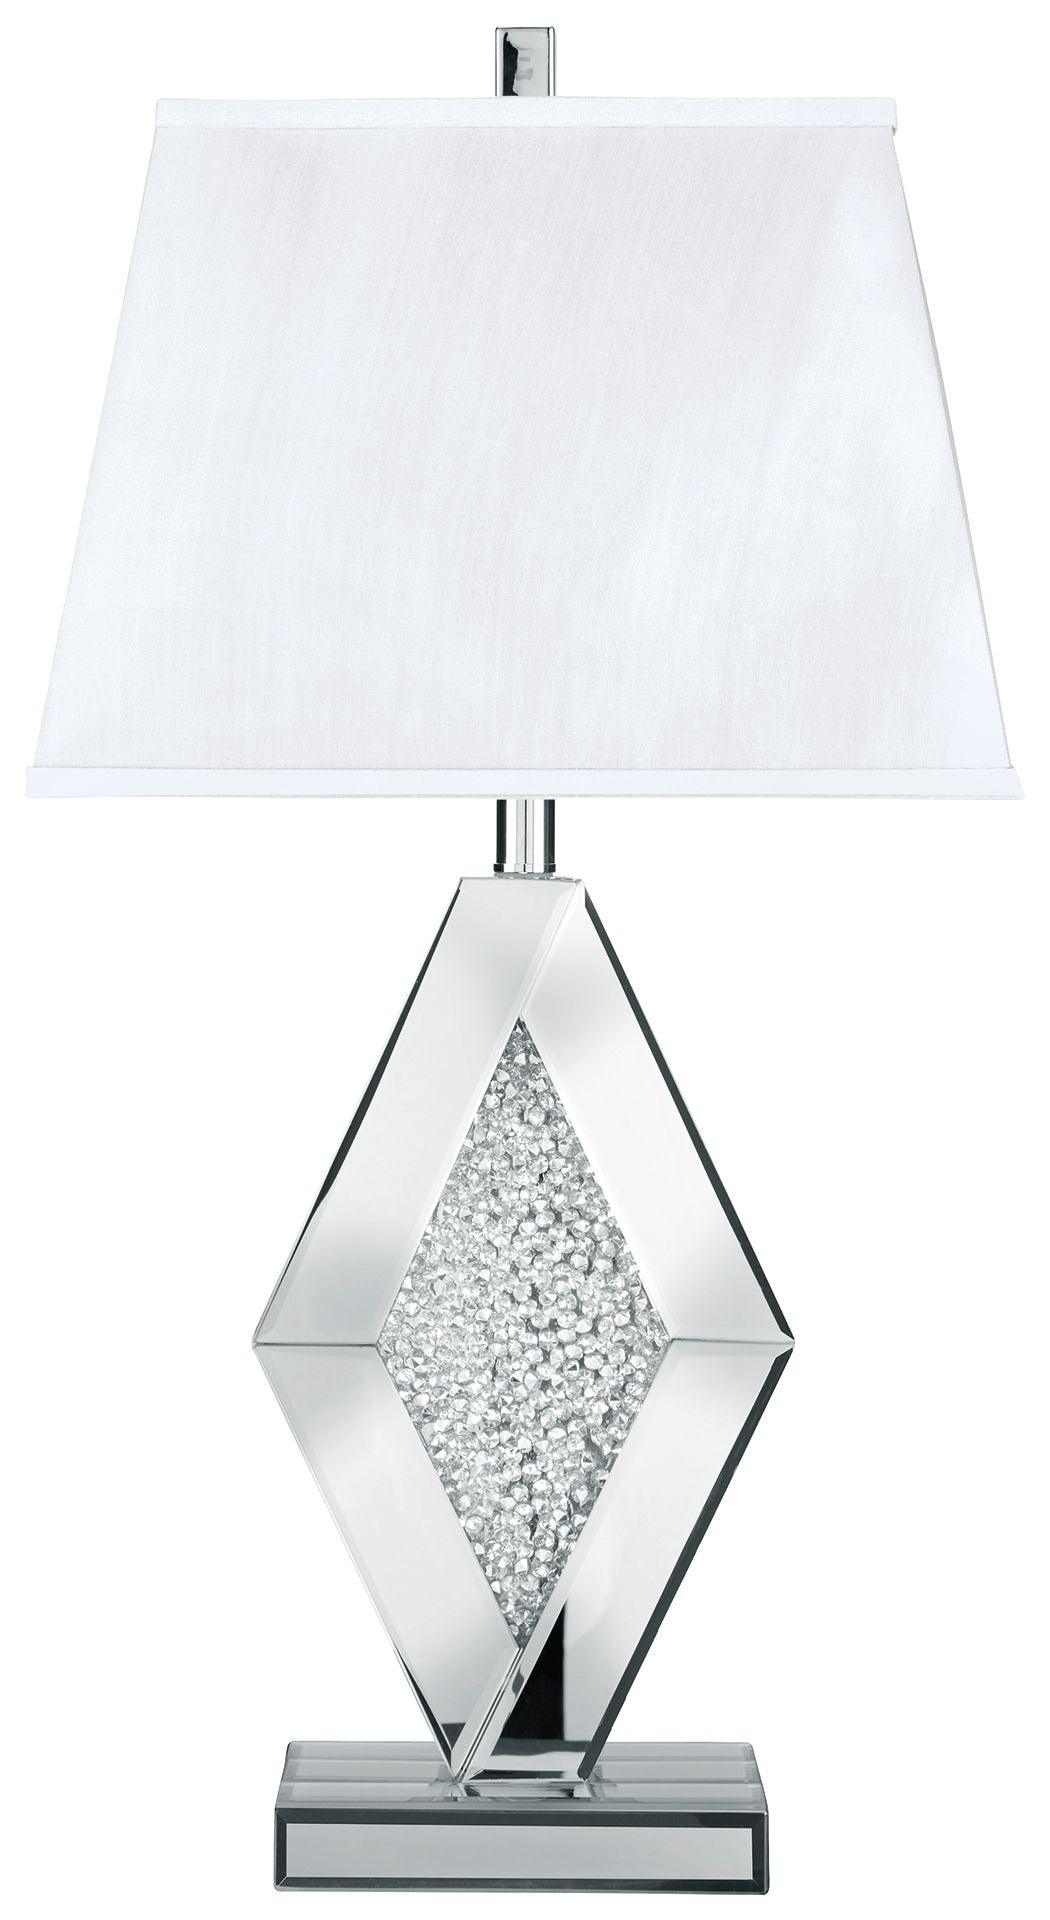 Ashley Furniture - Prunella - Silver Finish - Mirror Table Lamp - 5th Avenue Furniture